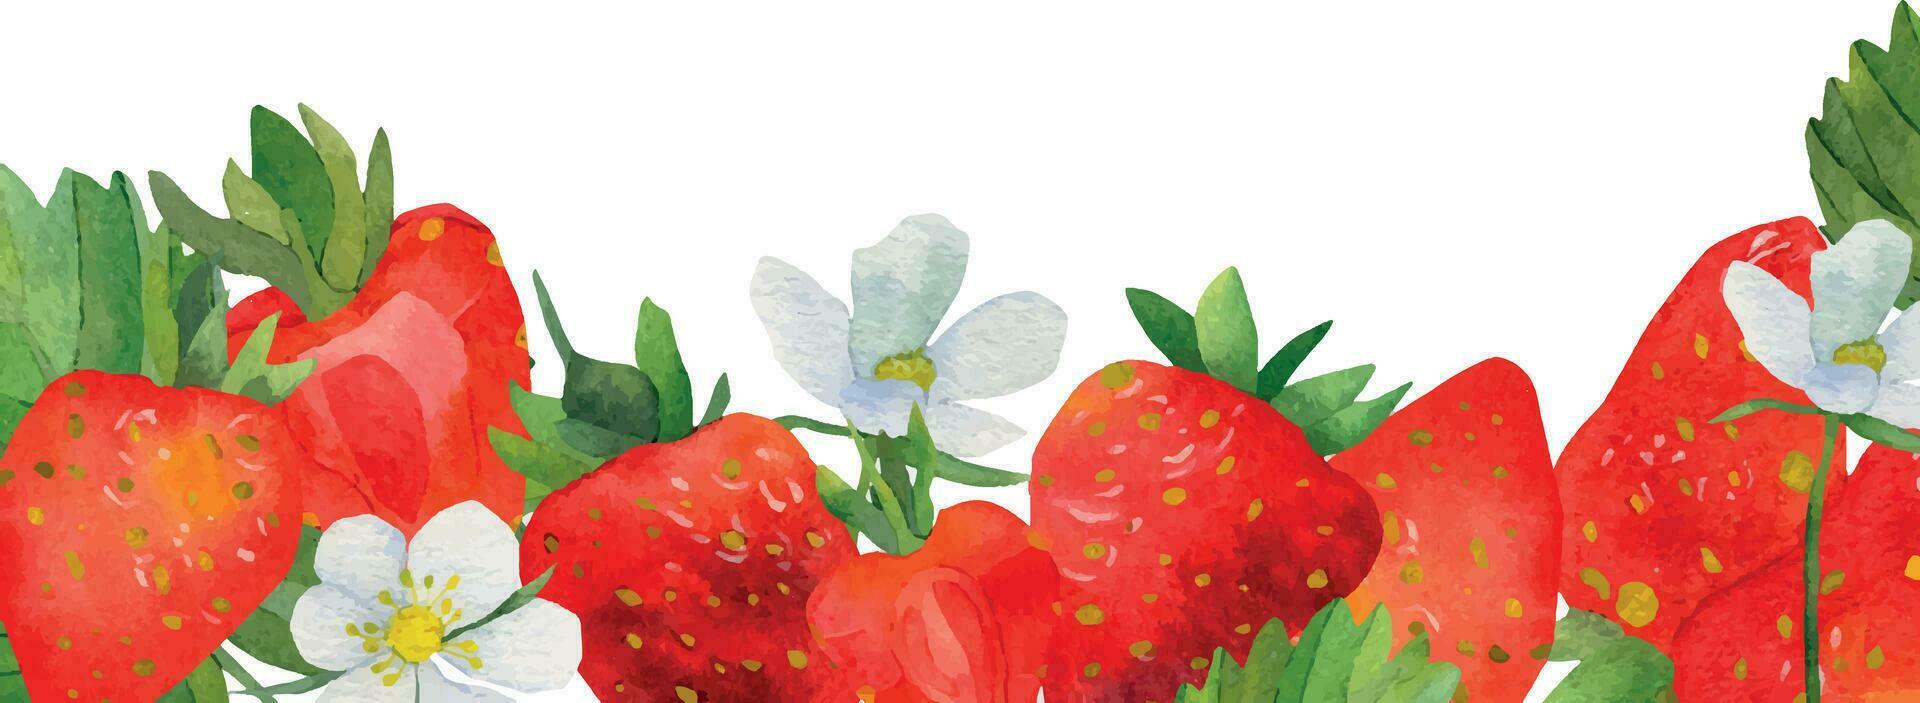 kader van rood aardbeien met groen bladeren waterverf. wit aardbei bloemen, een tekst kader gemarkeerd Aan een wit achtergrond. zomer bessen, een afdrukken voor het drukken Aan ansichtkaarten vector